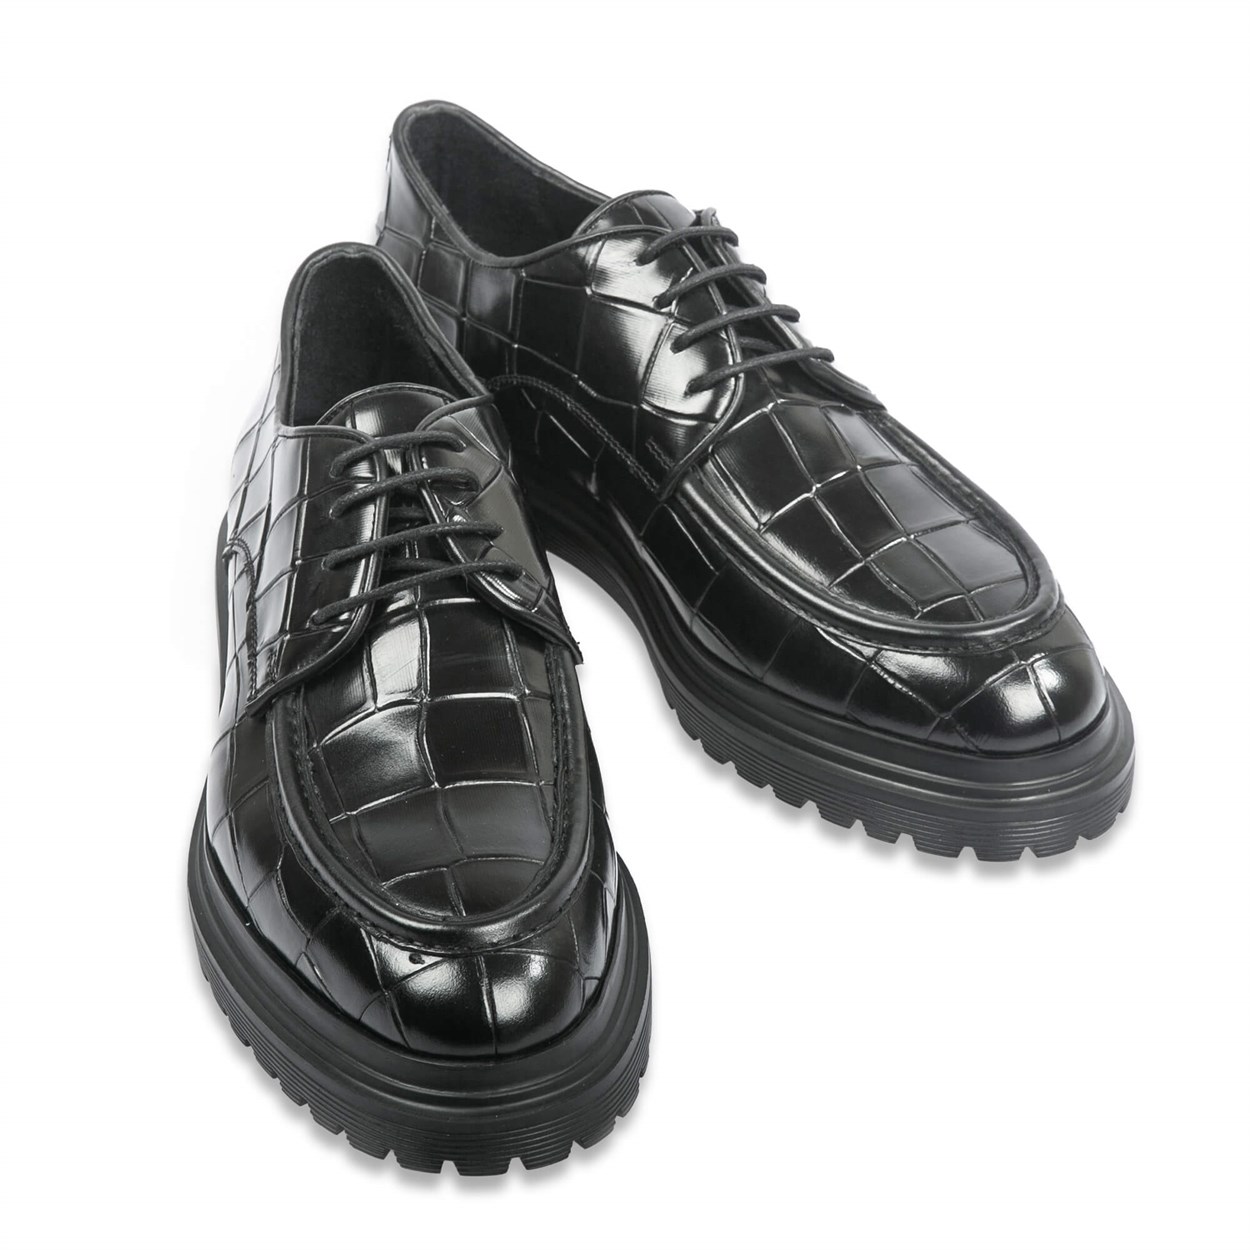 Siyah Kroko Deri Bağcıklı Erkek Ayakkabı | Flower Ayakkabı